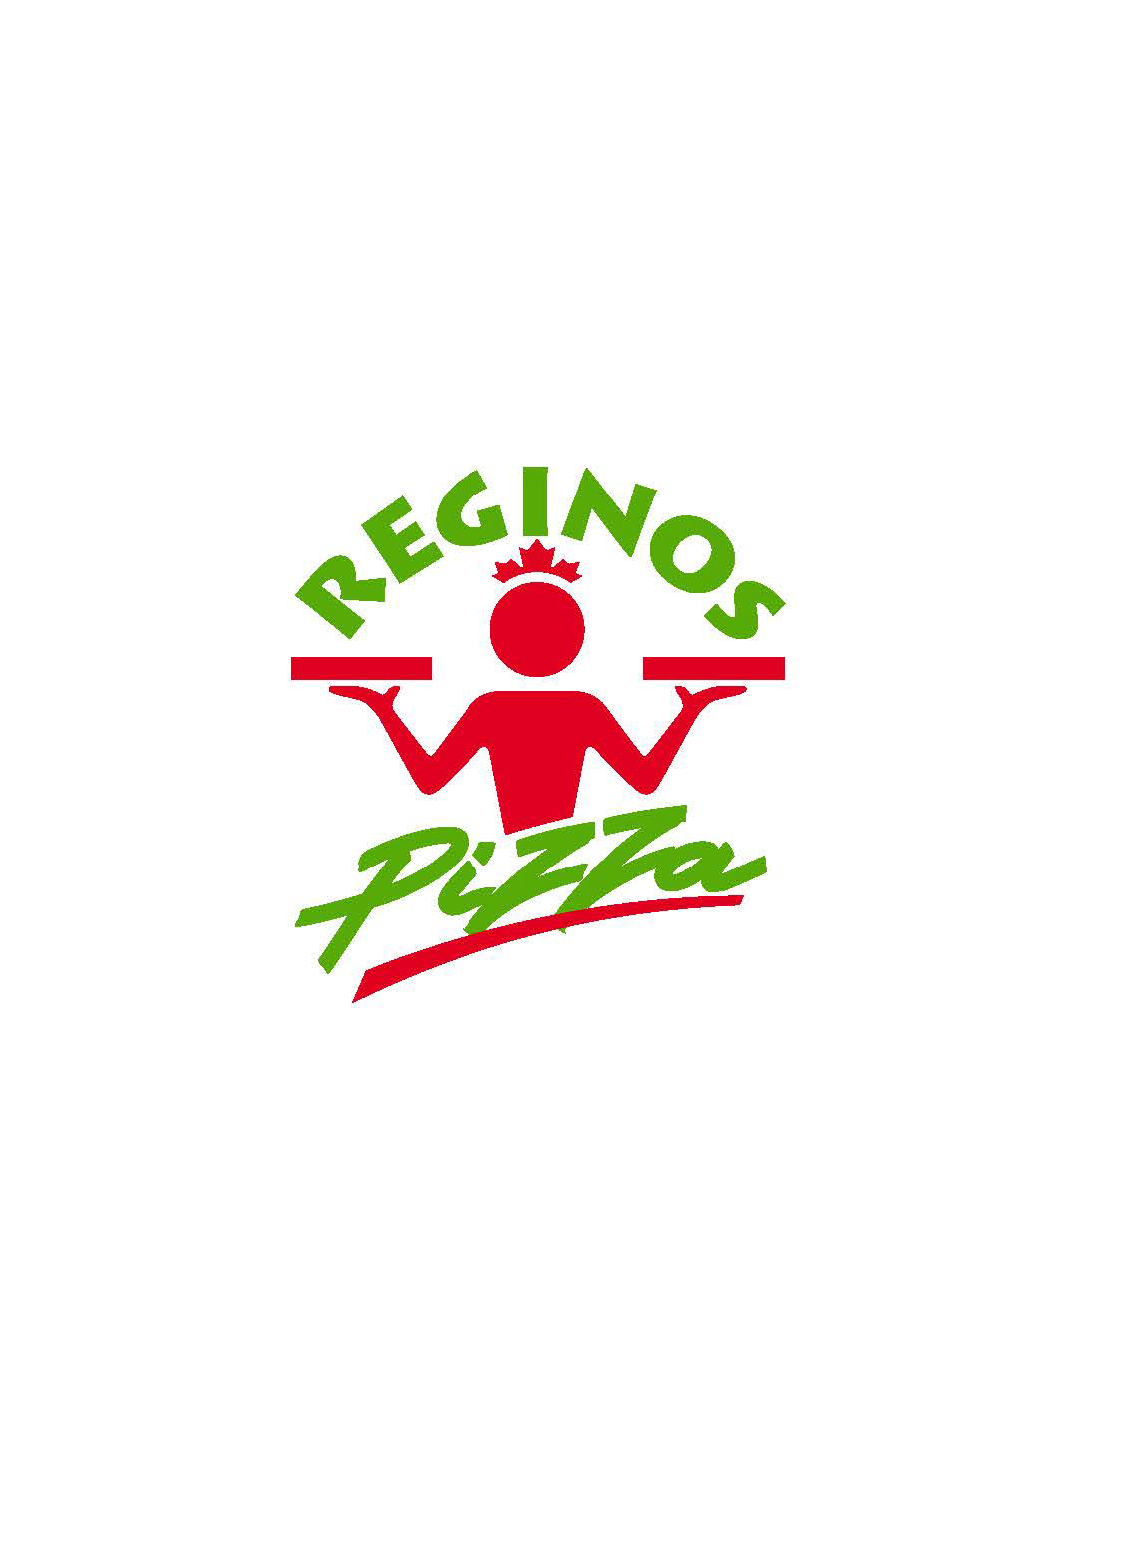 Regino's Pizza